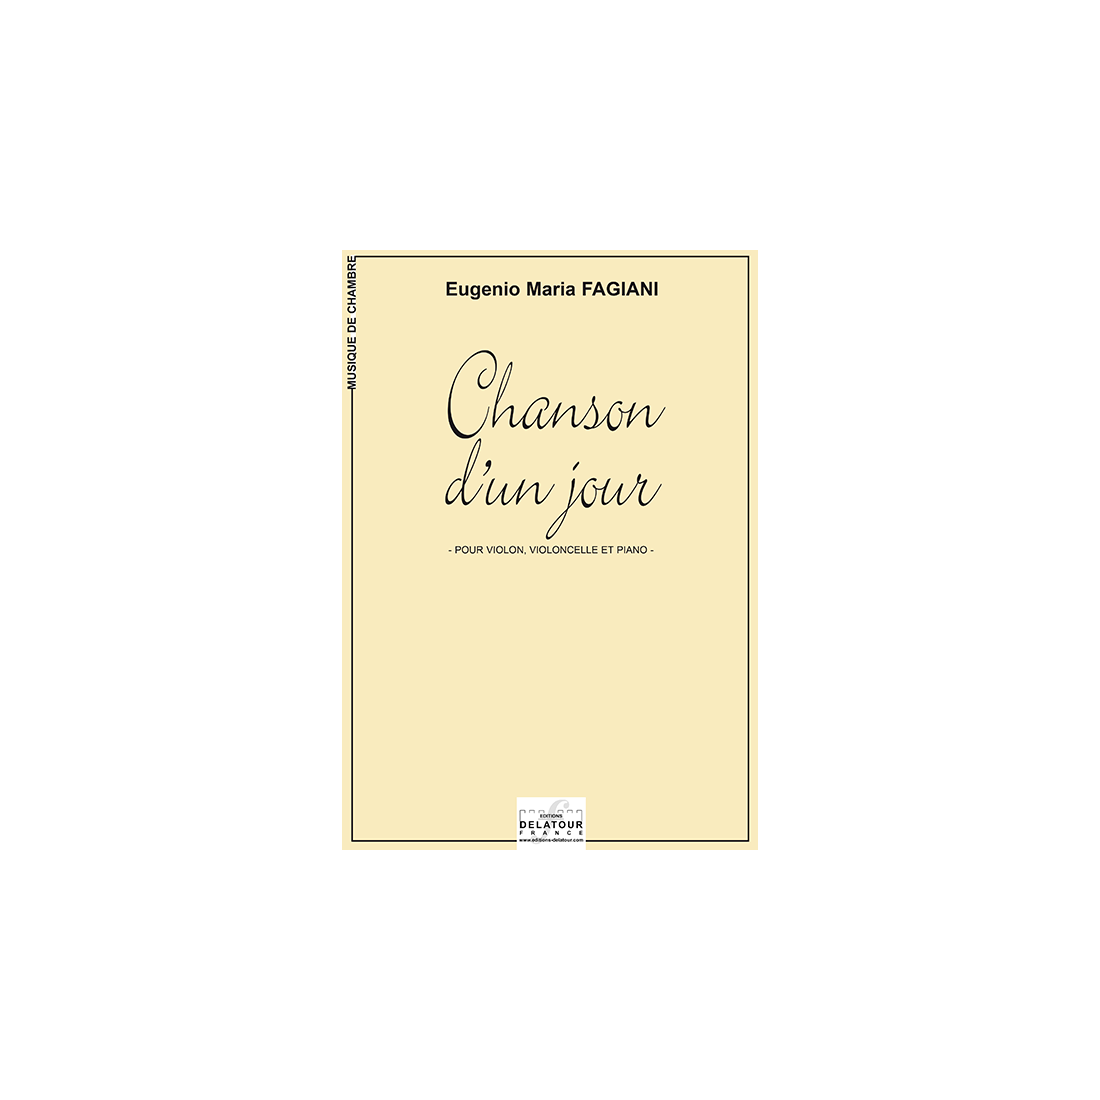 Chanson d'un jour for violin, cello and piano